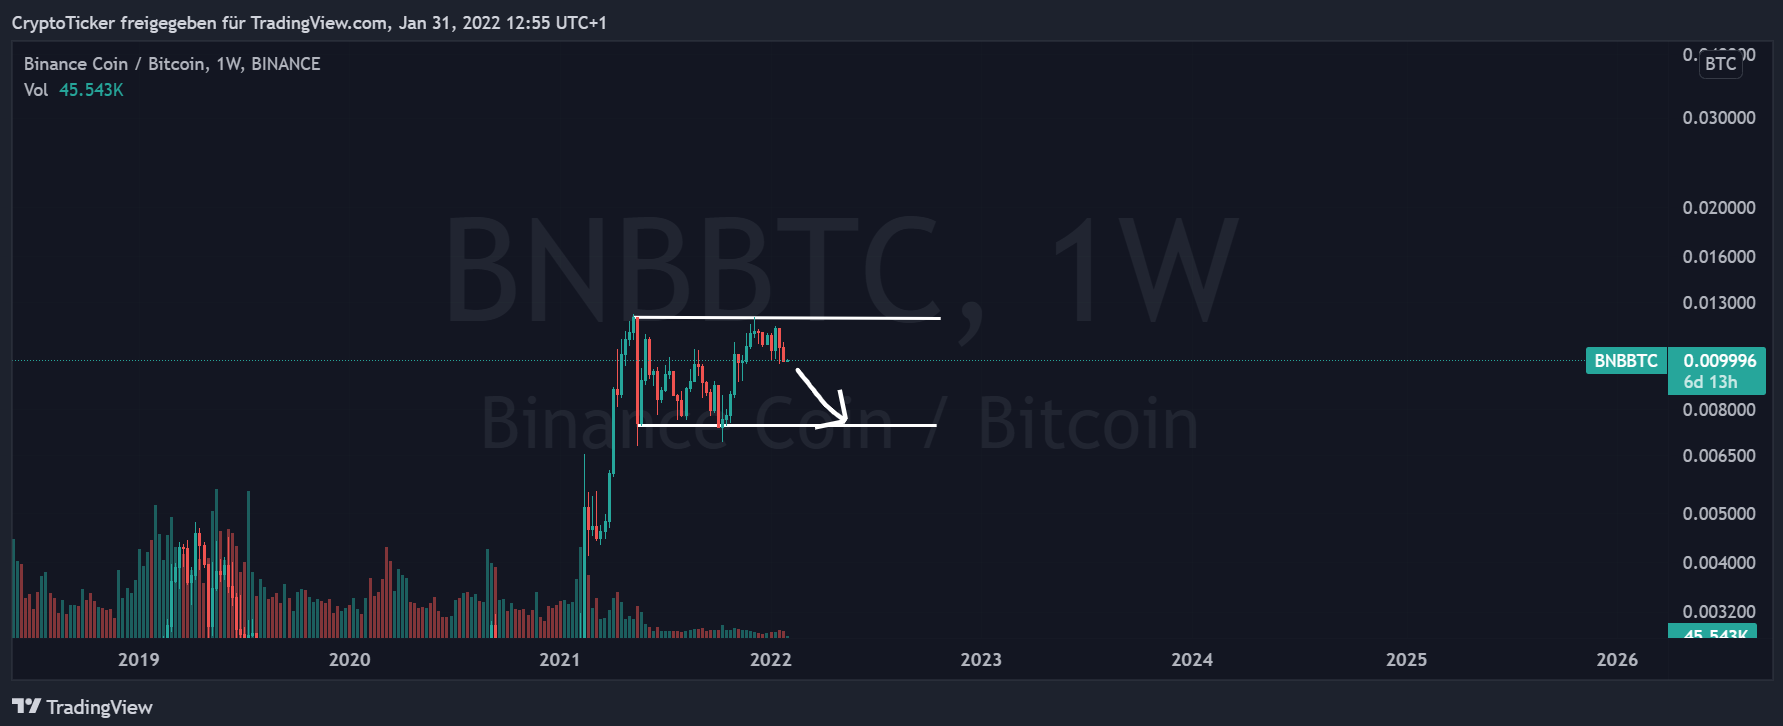 BNB/BTC 1-week chart showing BNB getting weaker vs BTC